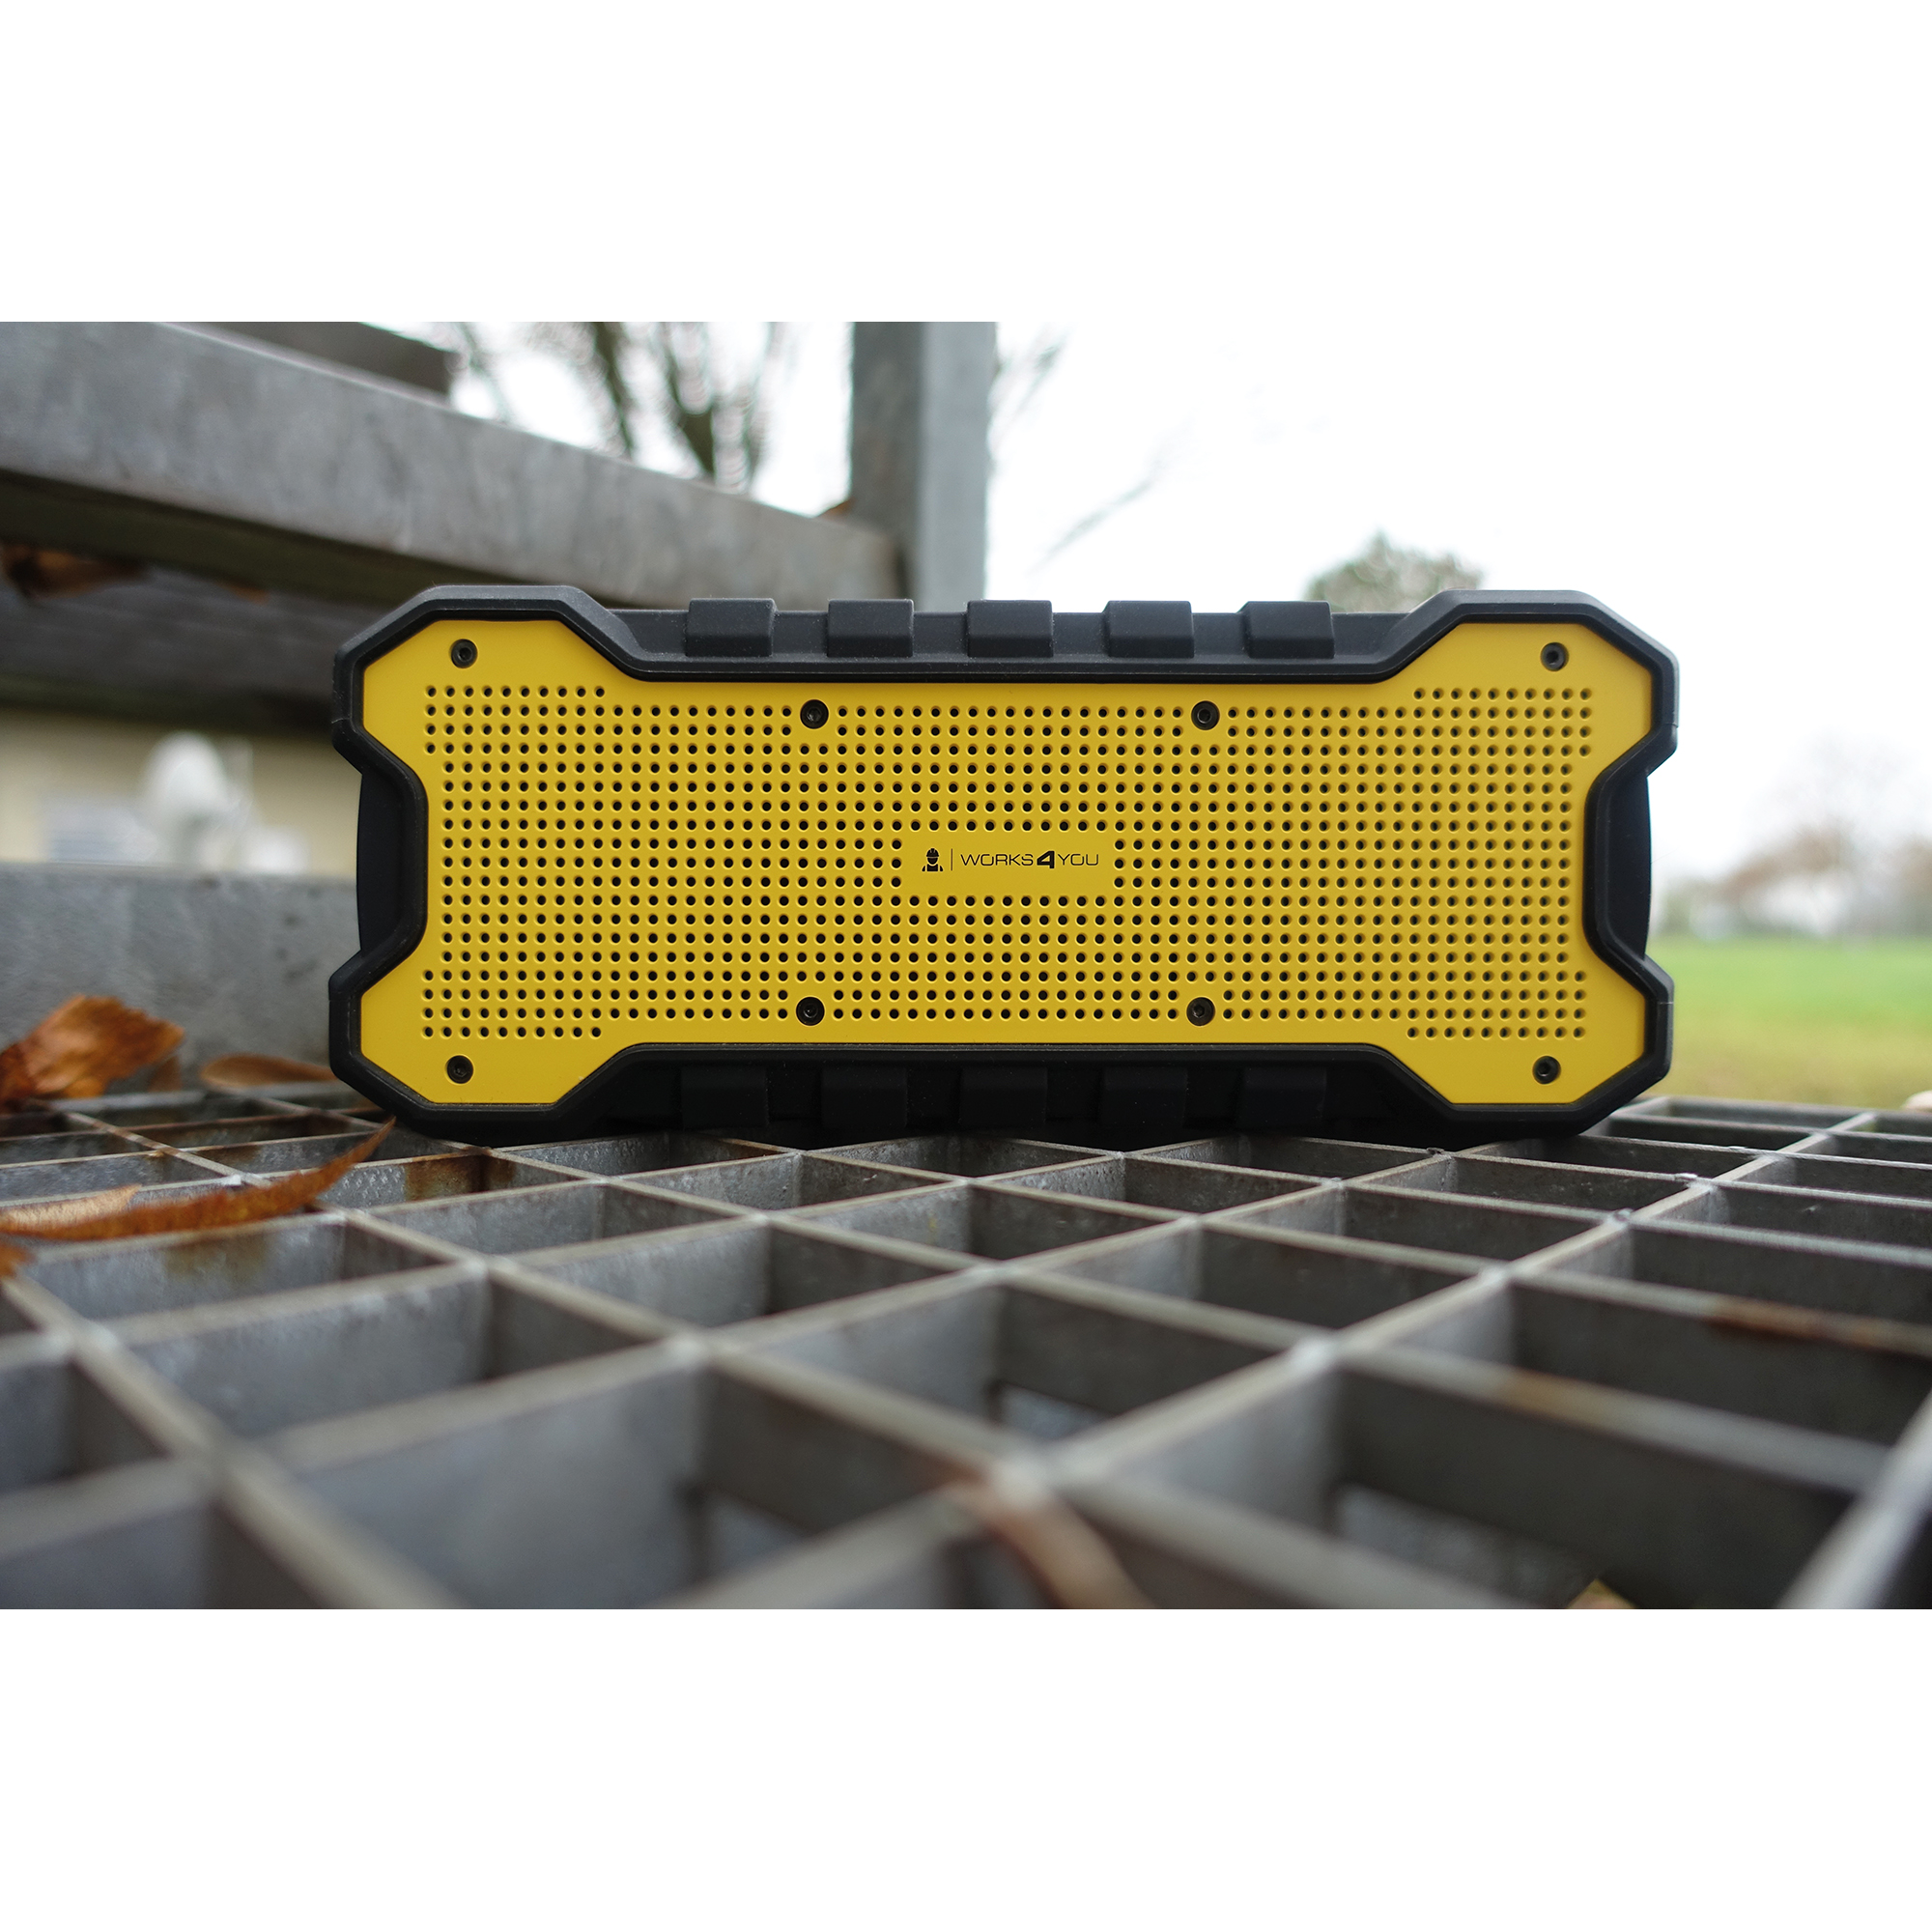 Bluetooth Stereo-Lautsprecher gelb/schwarz 2 x 6 W + product picture